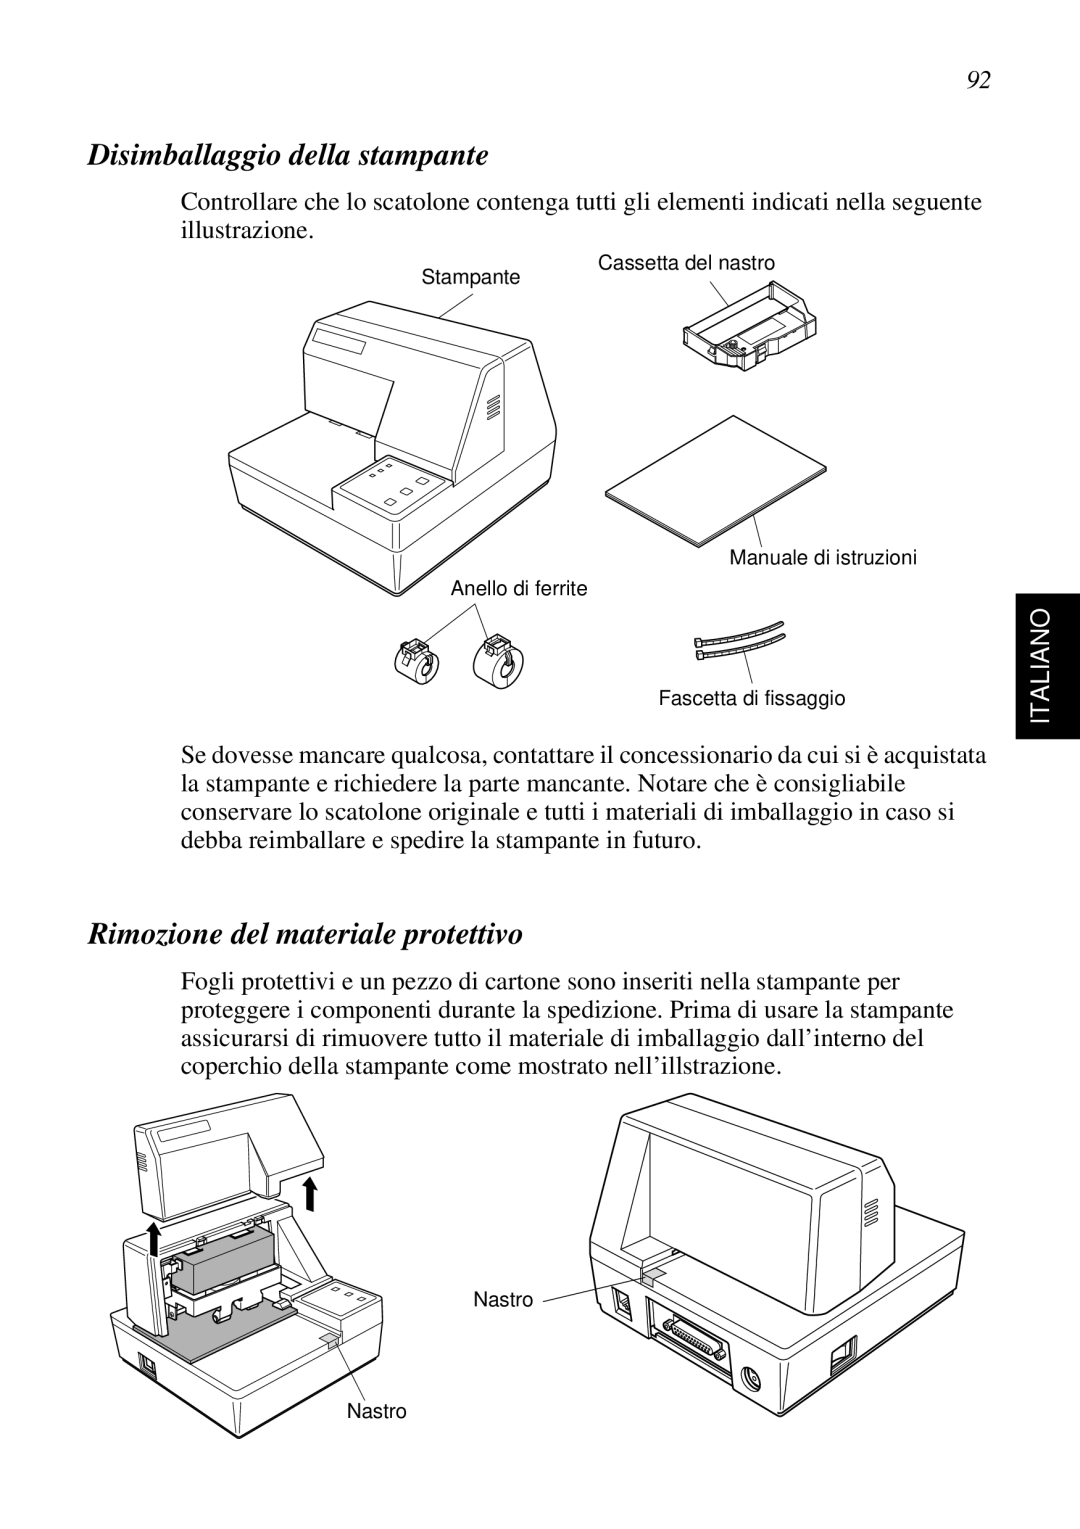 Star Micronics SP298 user manual Disimballaggio della stampante, Rimozione del materiale protettivo, Italiano 